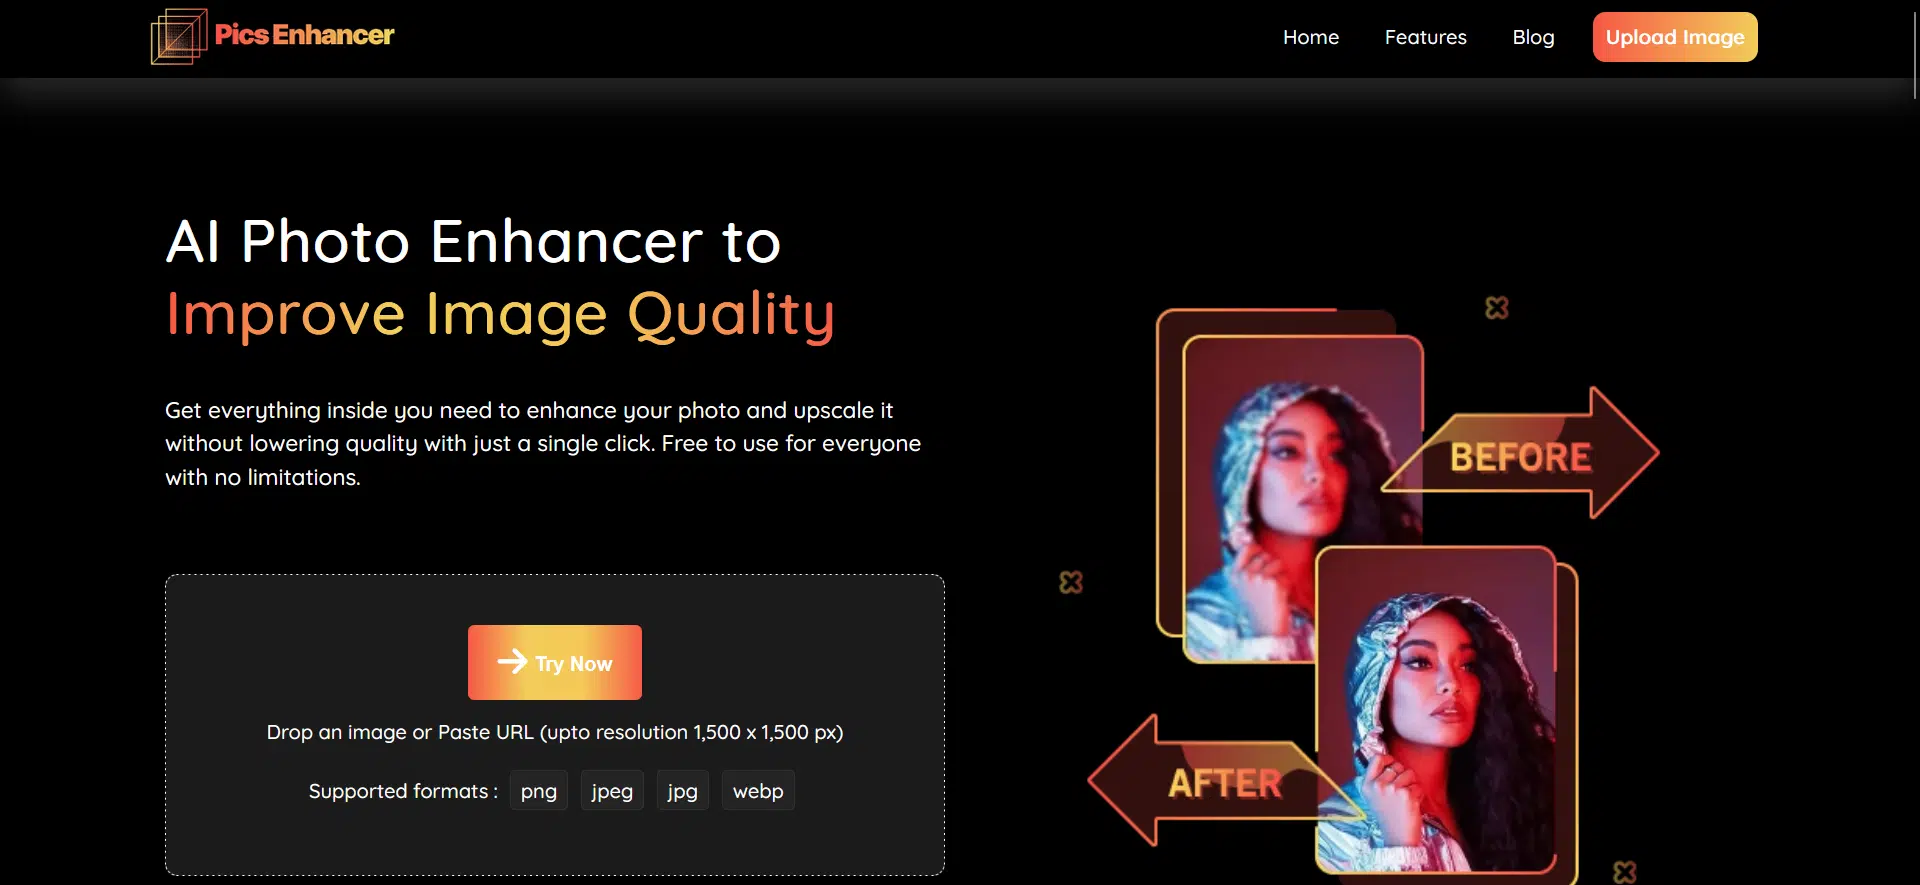 Pics Enhancerwebsite picture